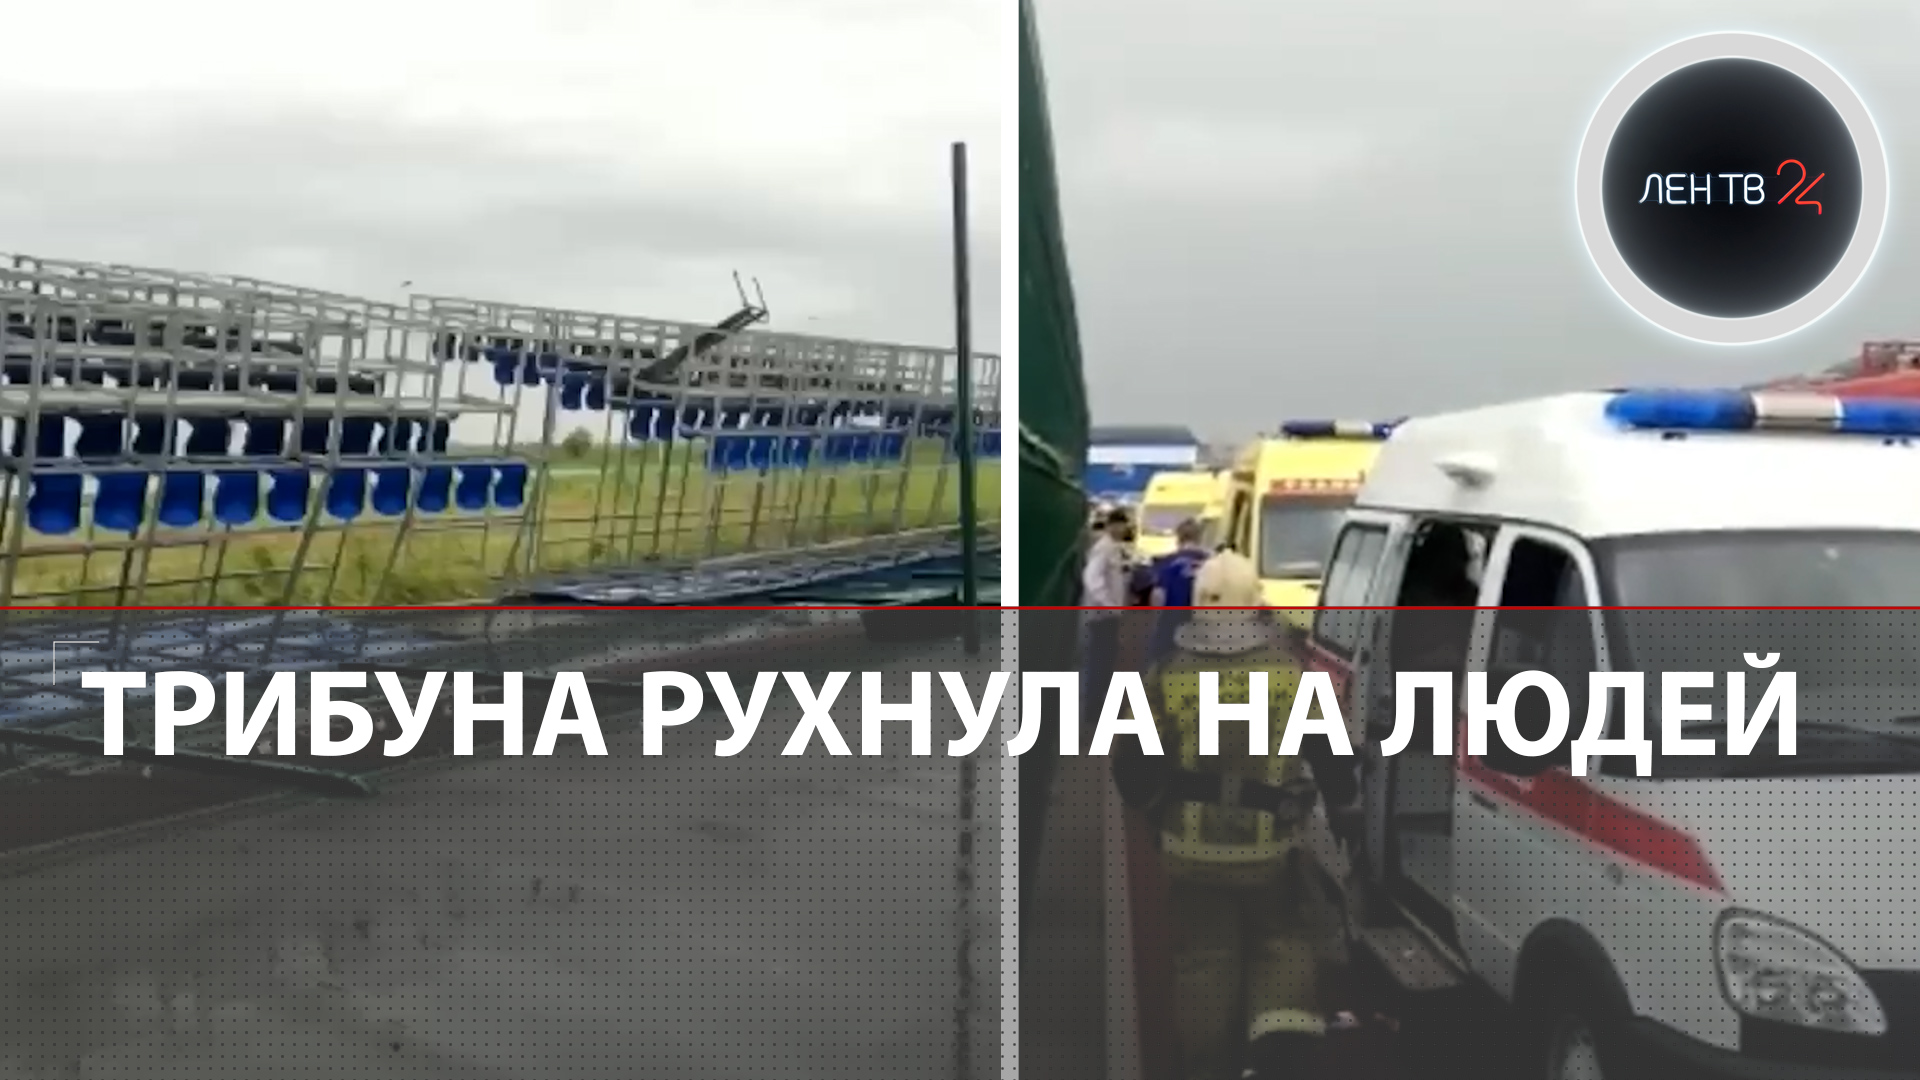 Футбольная трибуна придавила зрителей в Ростове | Ветер перевернул скамейки: есть погибший и раненые